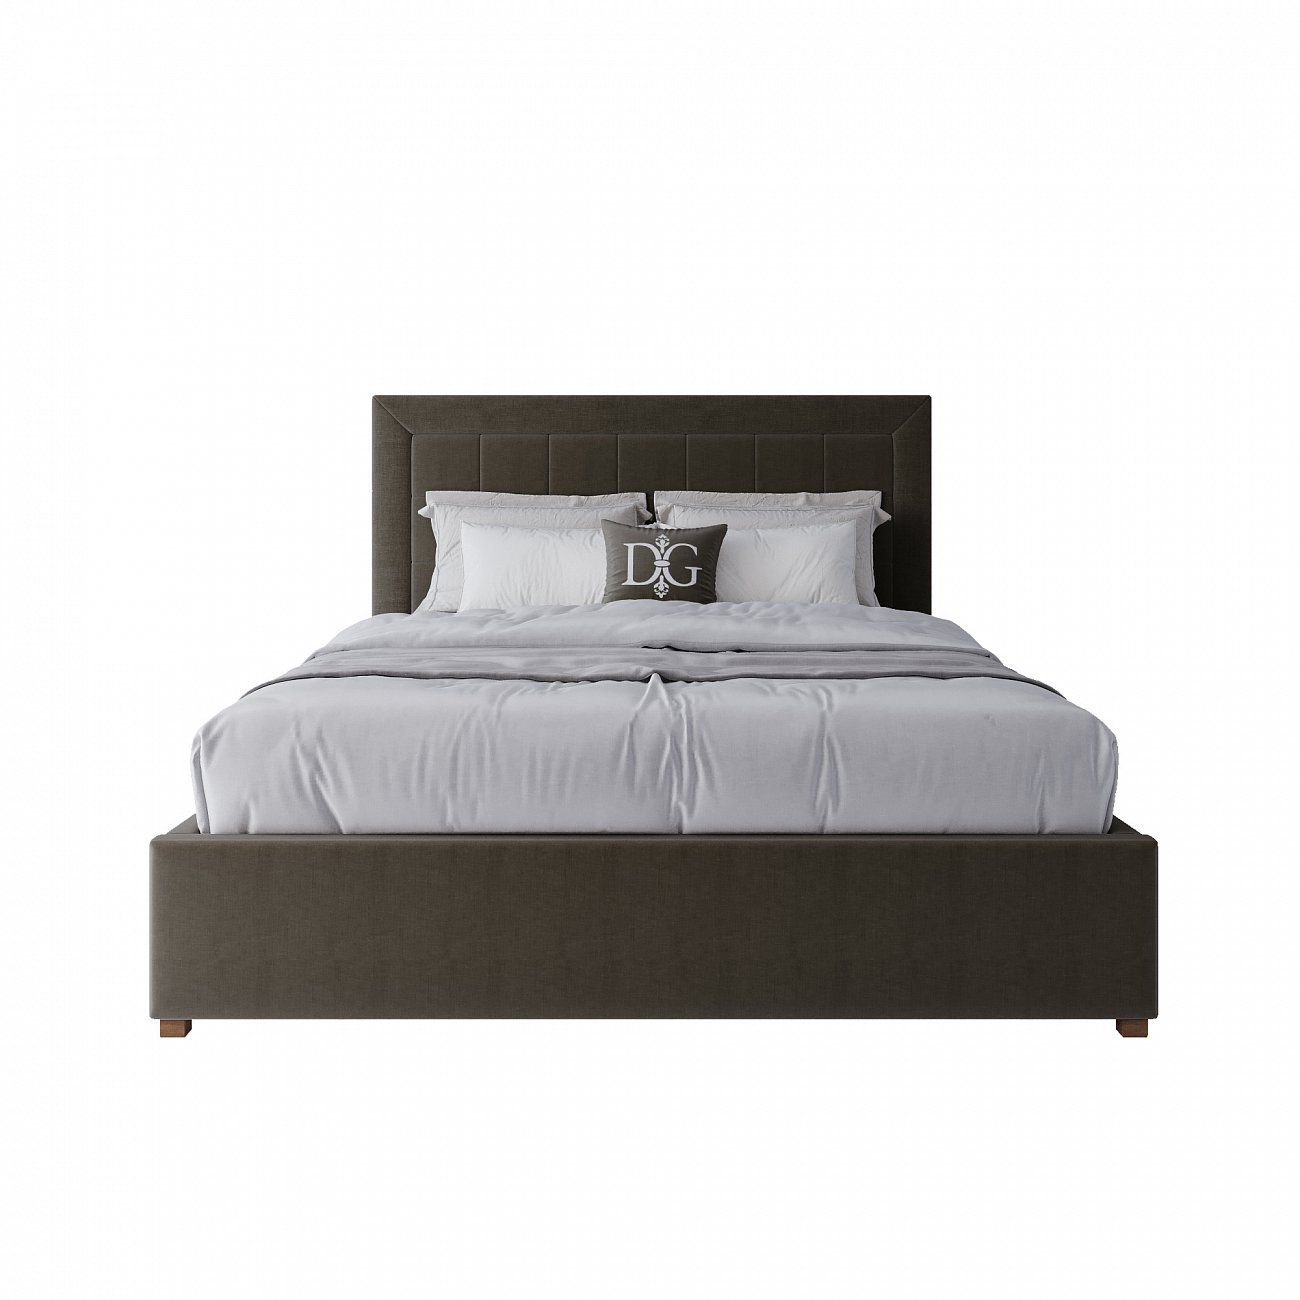 Кровать двуспальная 160х200 см коричневая Elizabeth